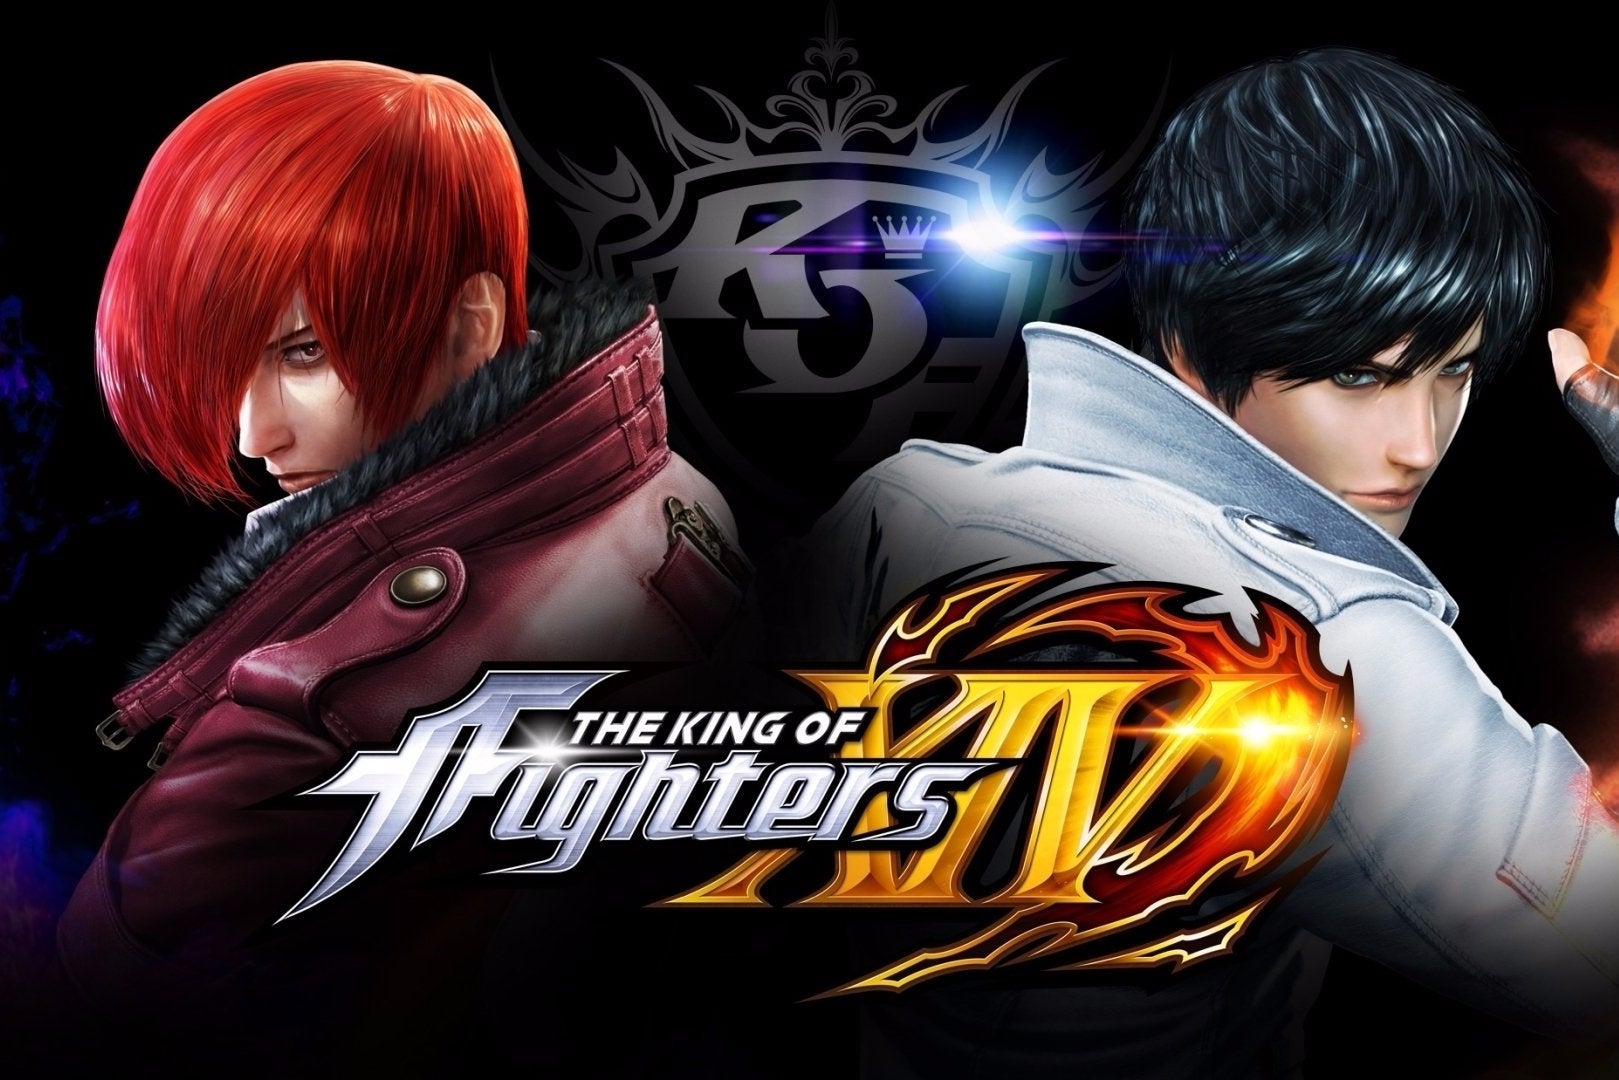 Immagine di The King of Fighters XIV è disponibile in Europa